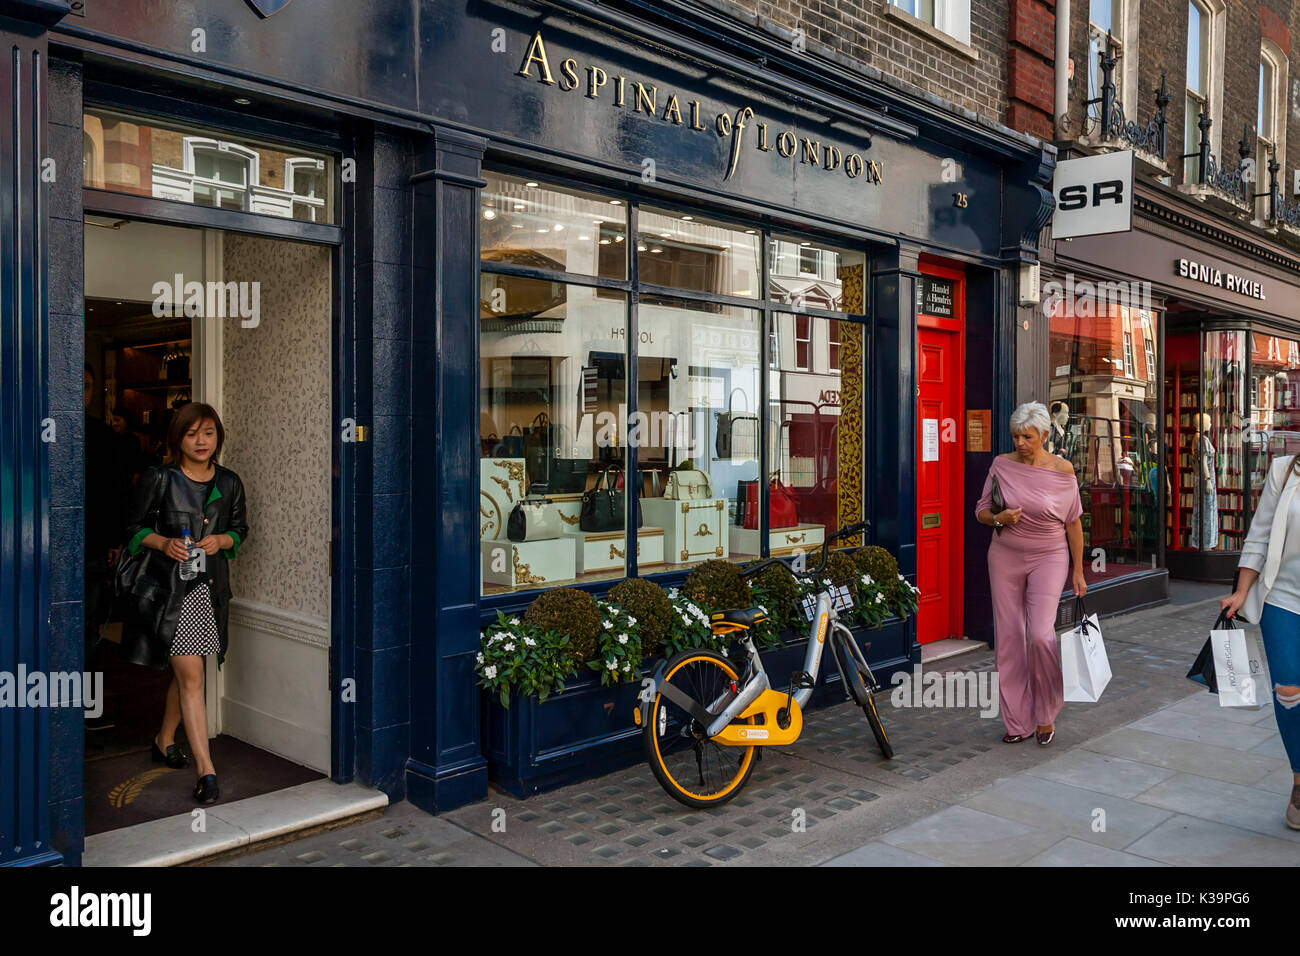 Aspinal di Londra, Lusso borsette in cuoio e negozio di articoli da regalo, London, Regno Unito Foto Stock